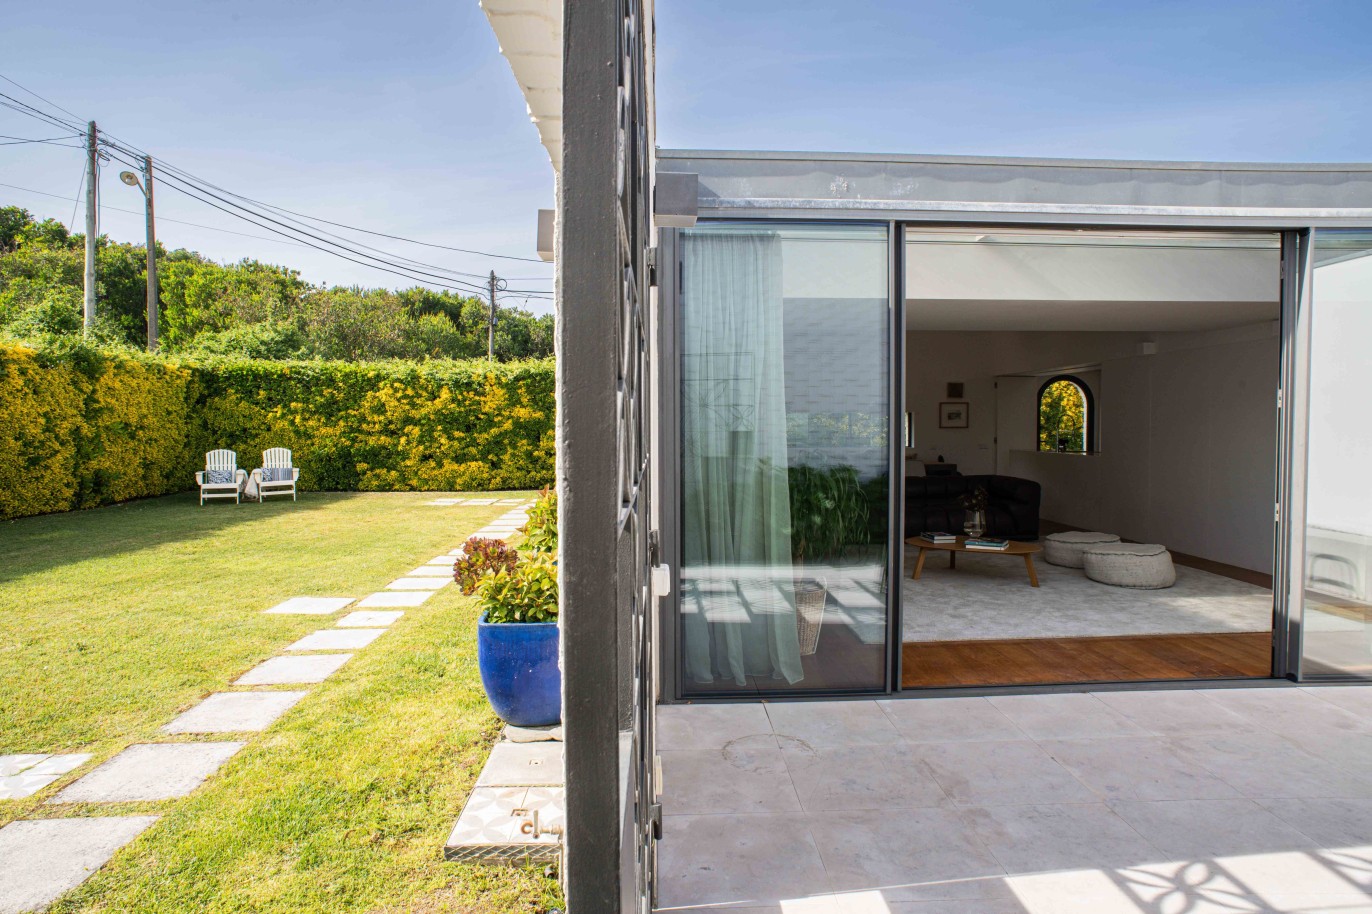 Maison à vendre avec jardin, proche de la mer et de la nature, Ofir, Esposende, Portugal_227648